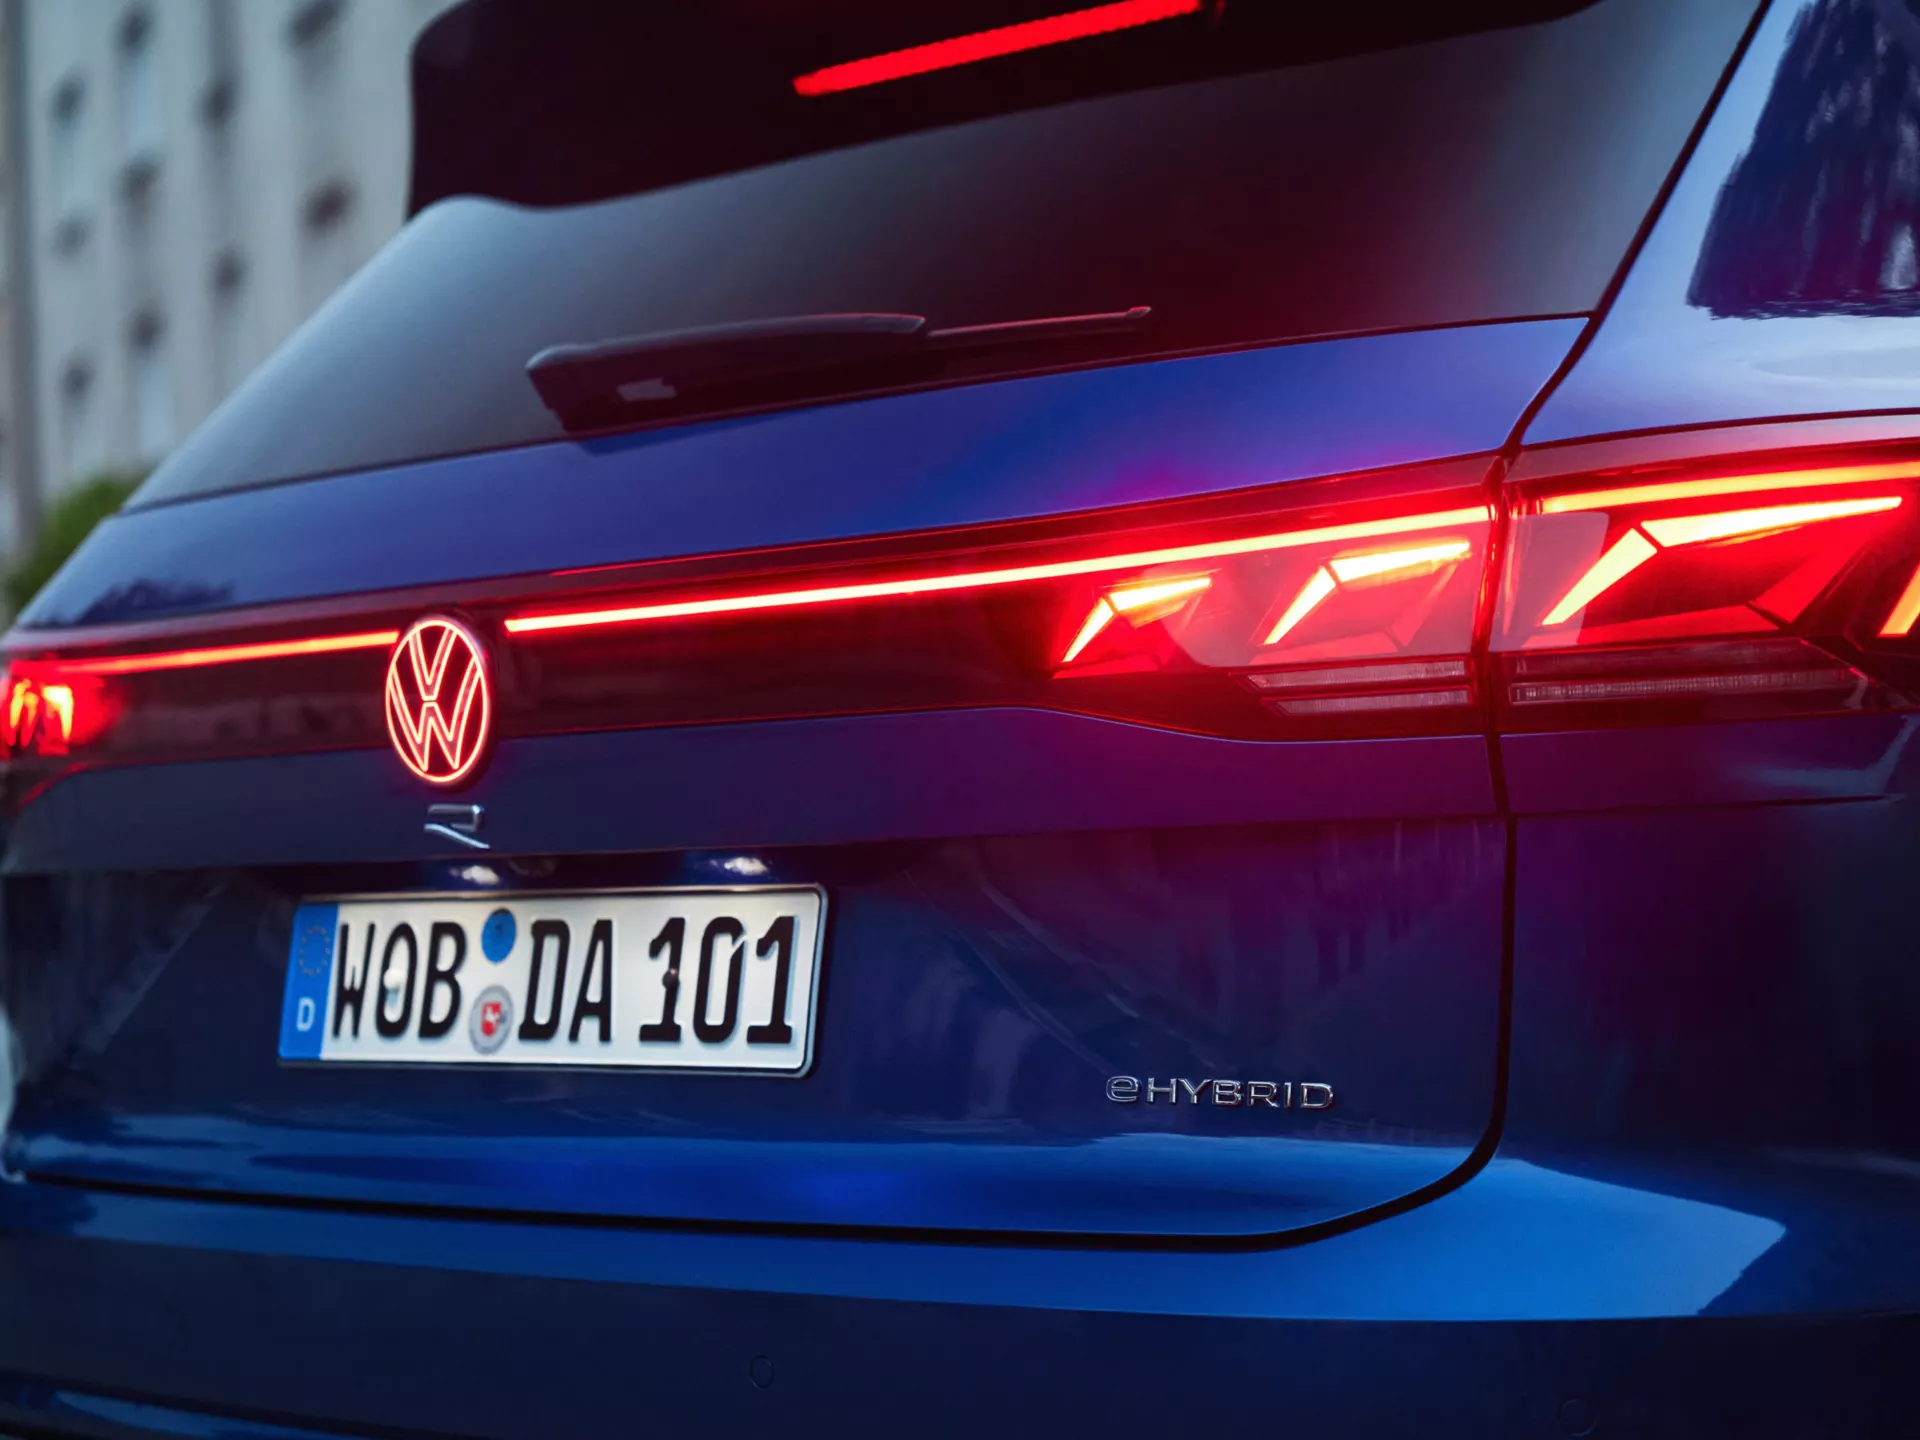 The Volkswagen Signature